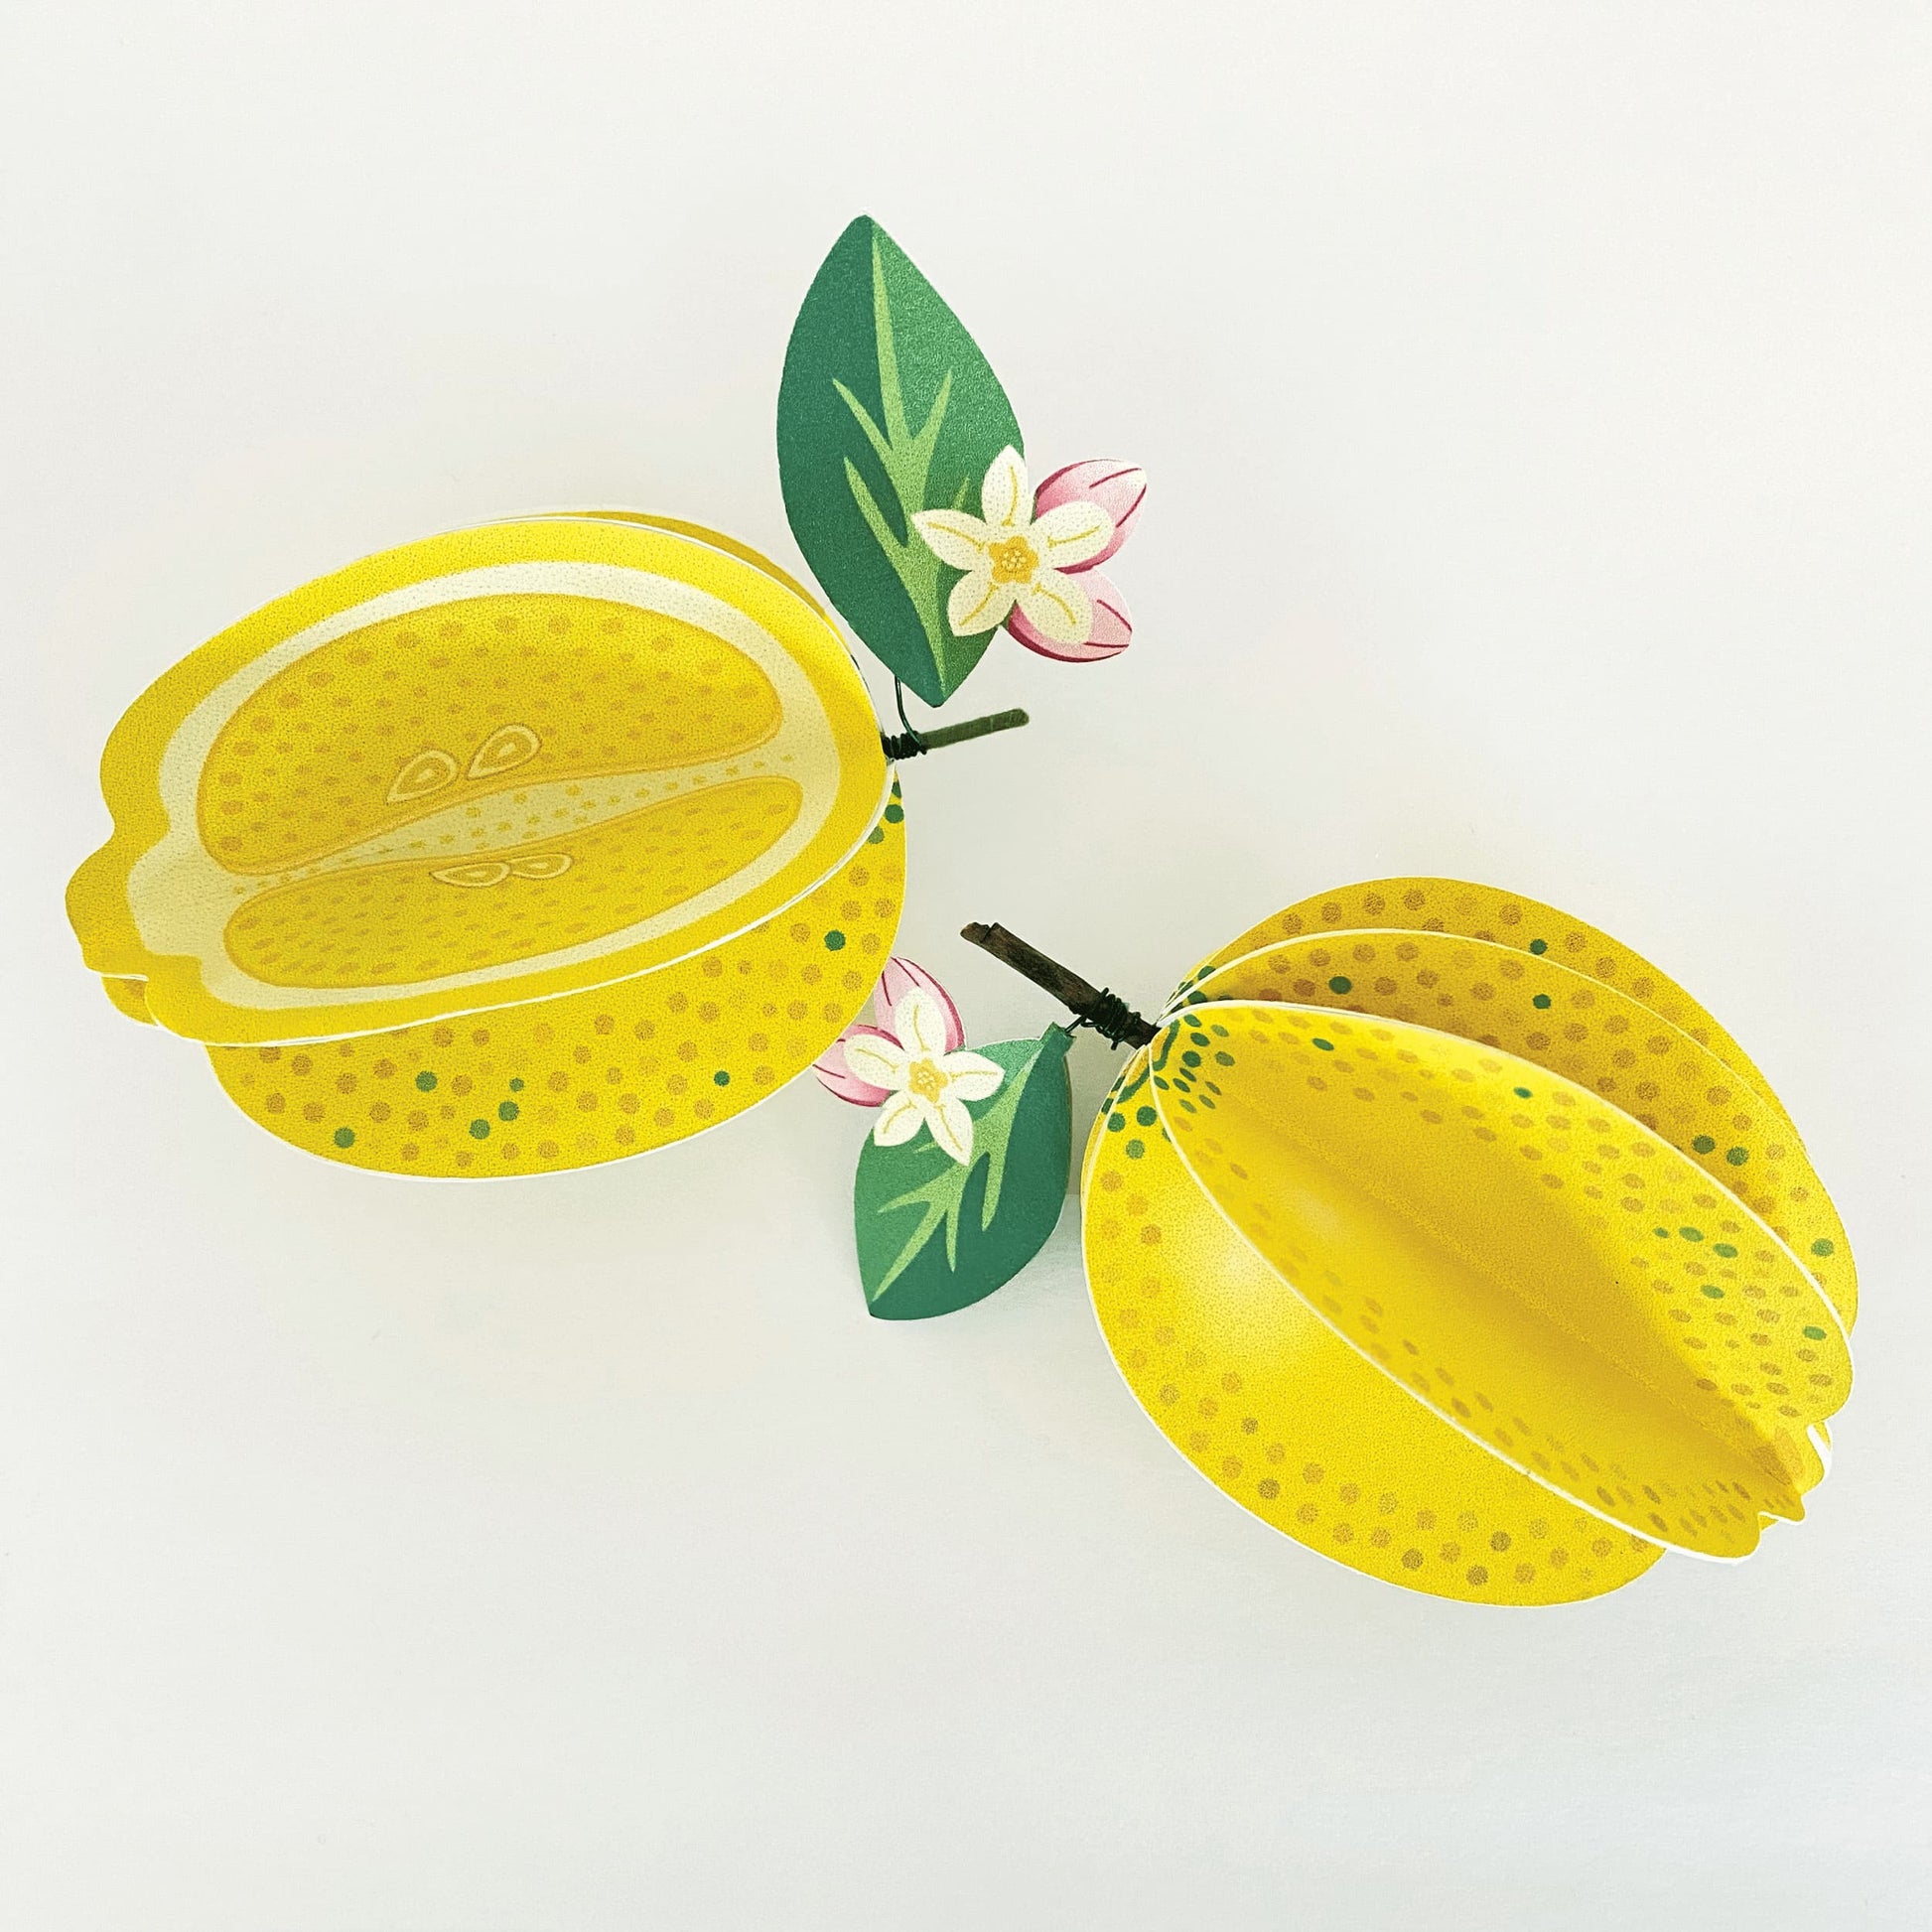 2 handmade paper lemons on a white background